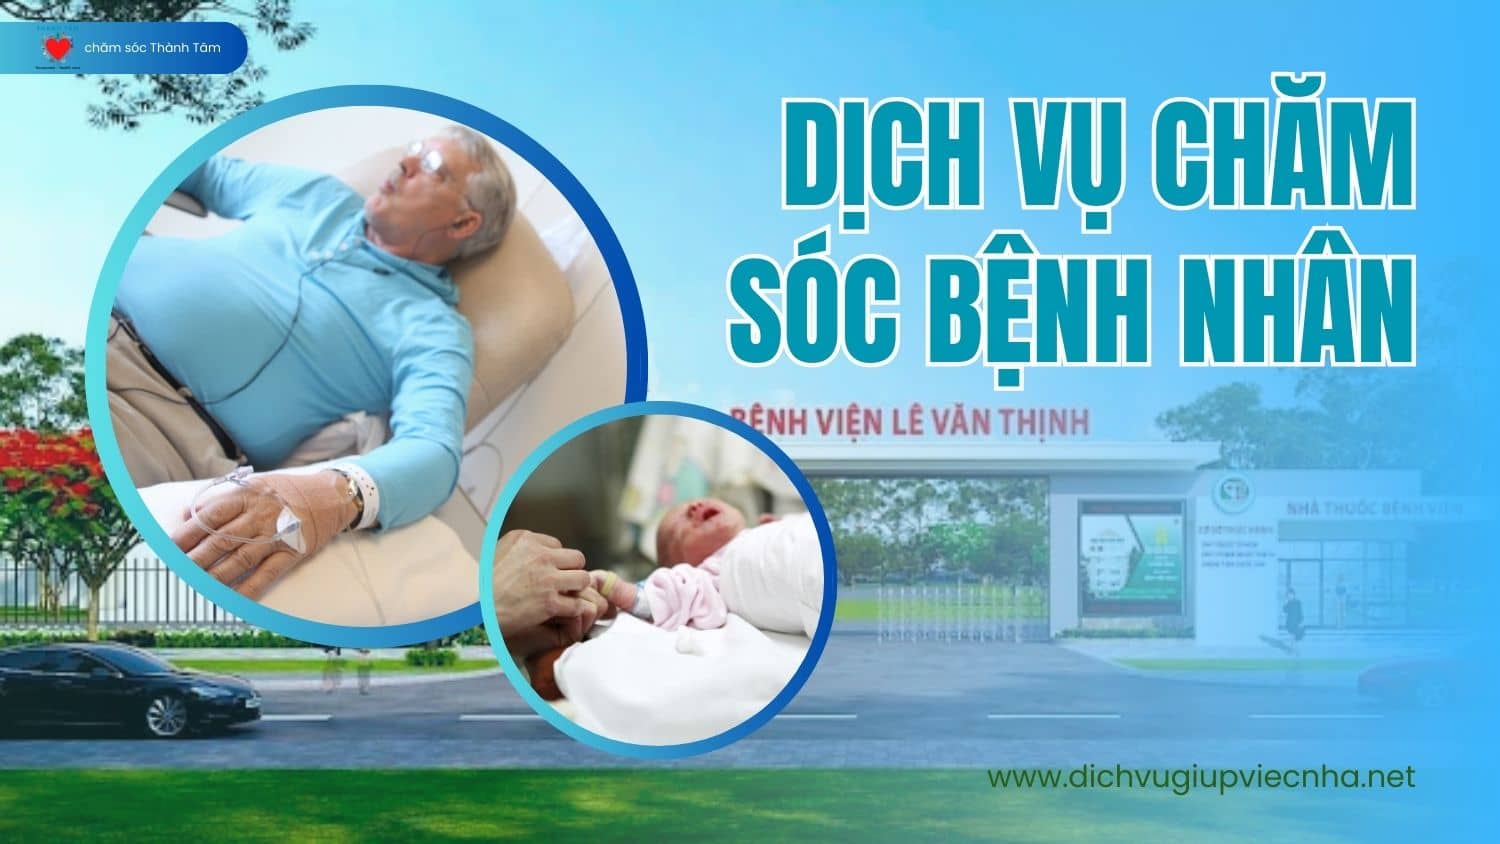 Dịch vụ chăm sóc bệnh nhân (nuôi bệnh, nuôi sanh) tại bệnh viện Lê Văn Thịnh